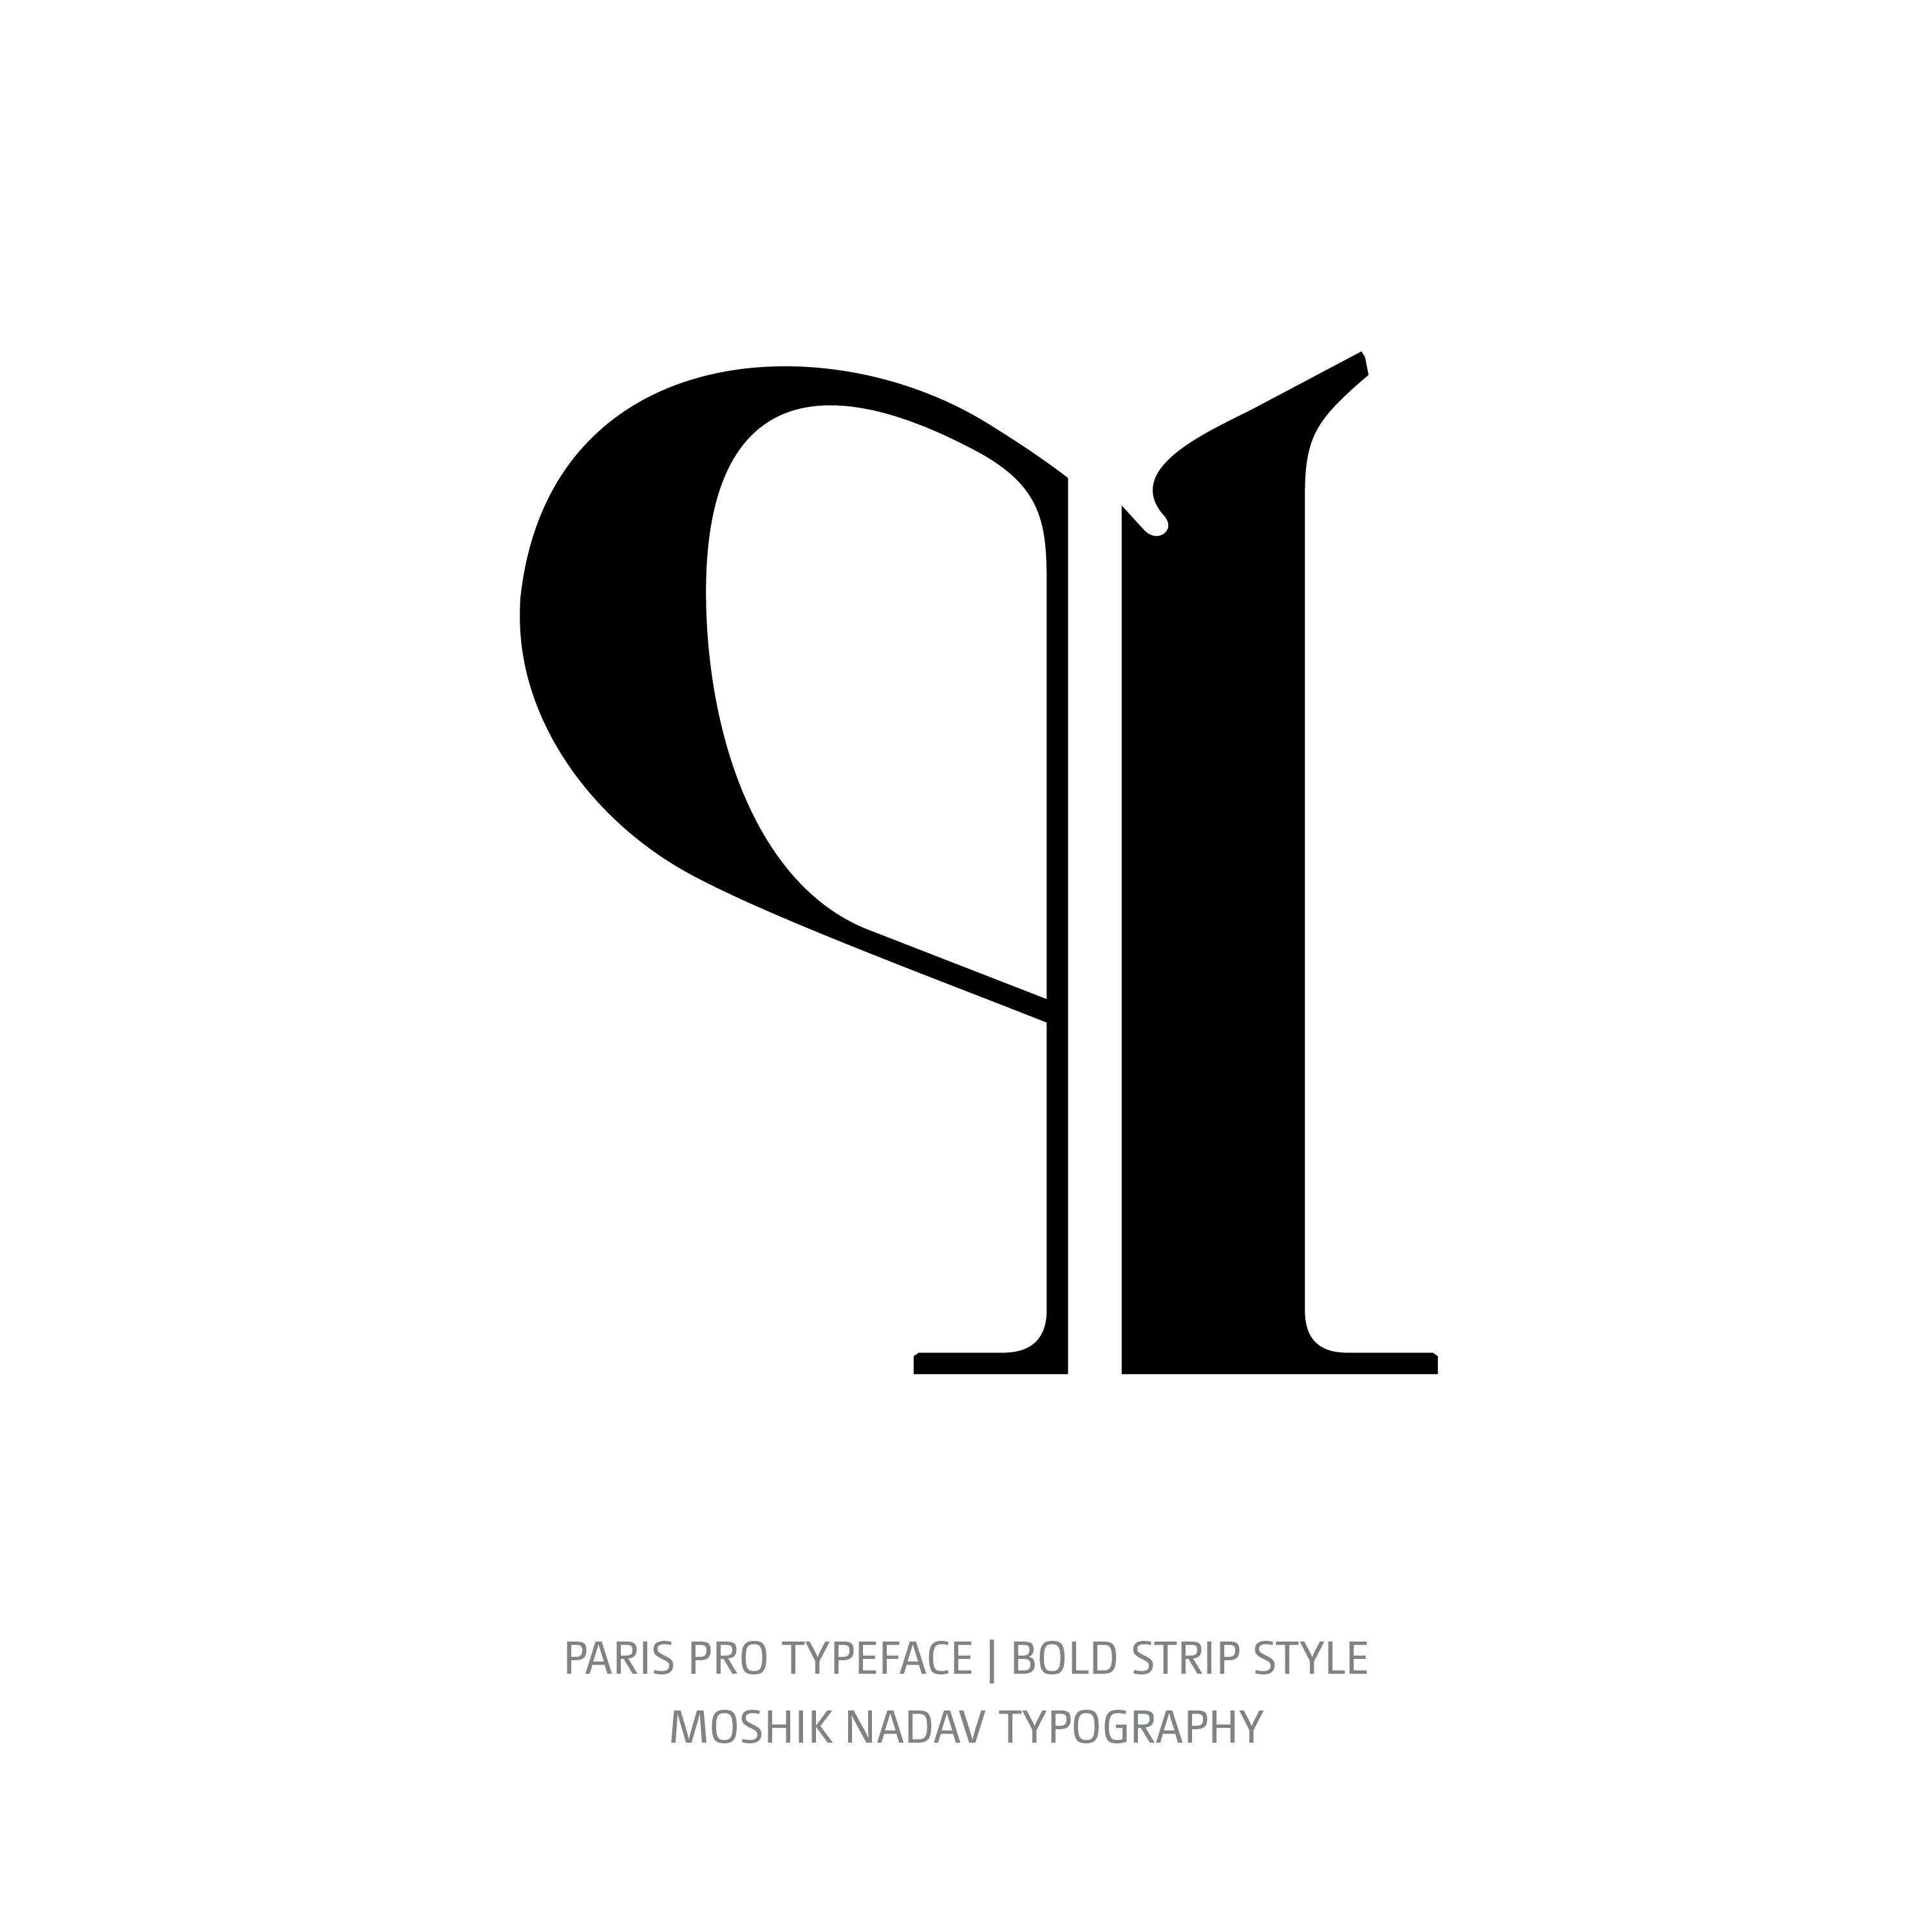 Paris Pro Typeface Bold Strip q